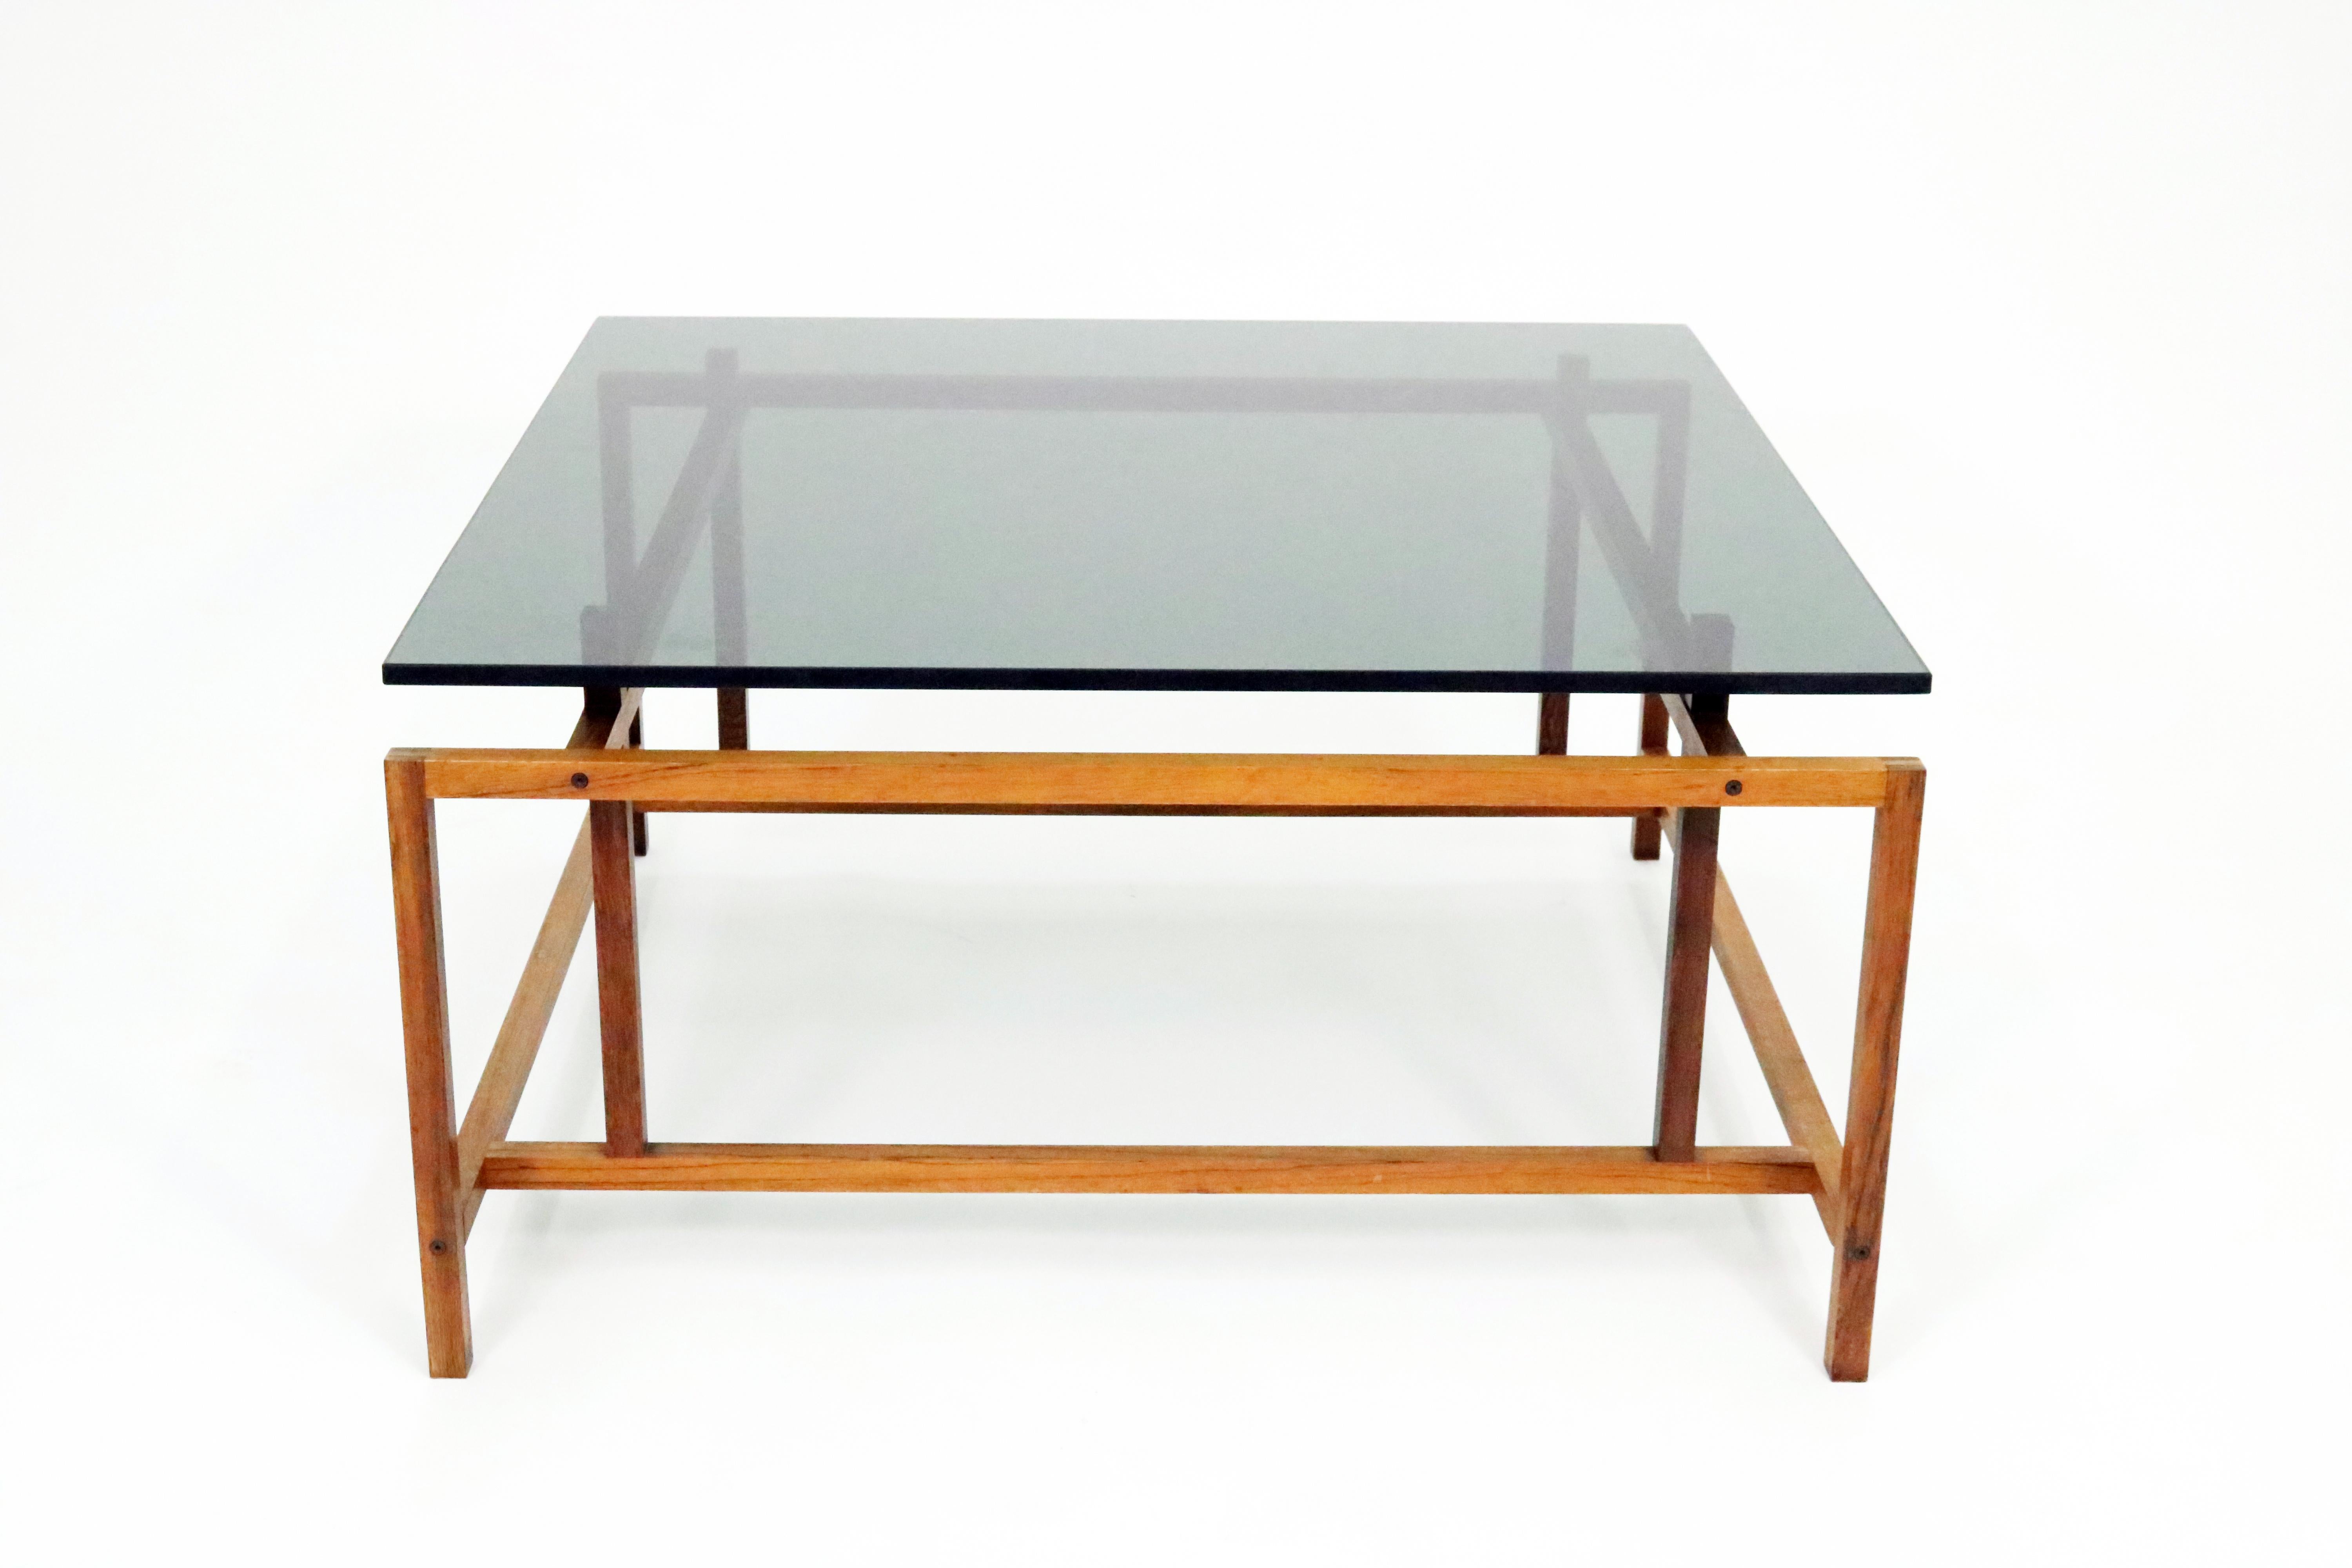 Une table basse scandinave moderne et élégante en bois de rose et verre fumé par Henning Norgaard pour Komfort. 

La base géométrique minimaliste en palissandre massif présente une excellente qualité de fabrication, avec des assemblages à tenon et